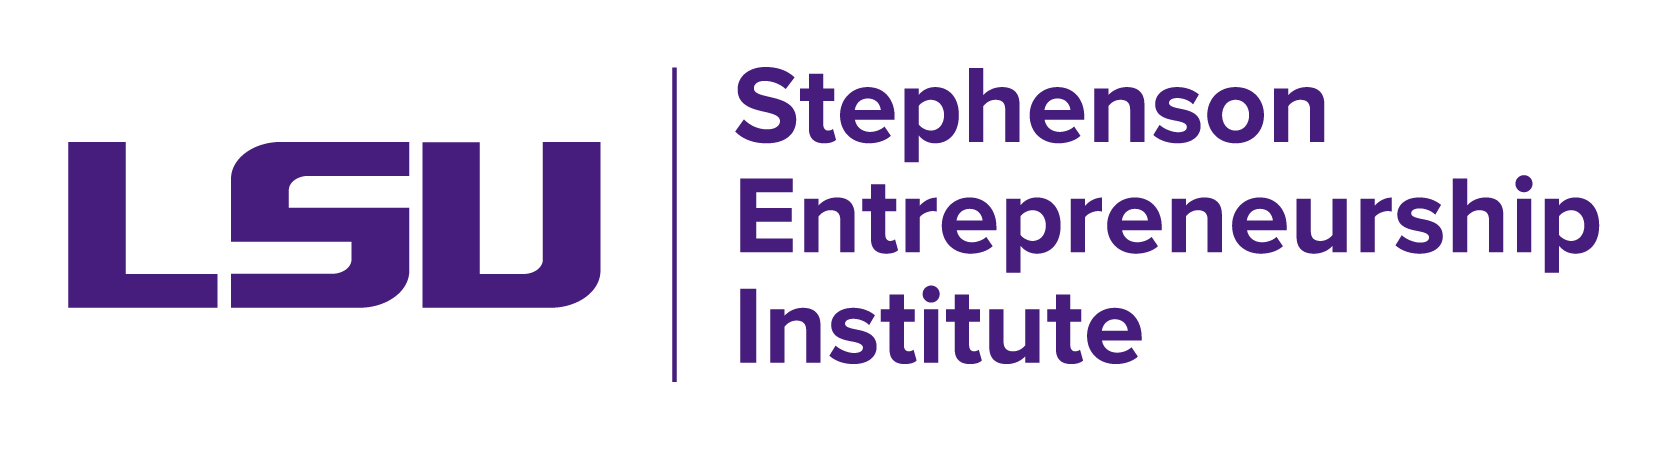 Stephenson Entrepreneurship Institute